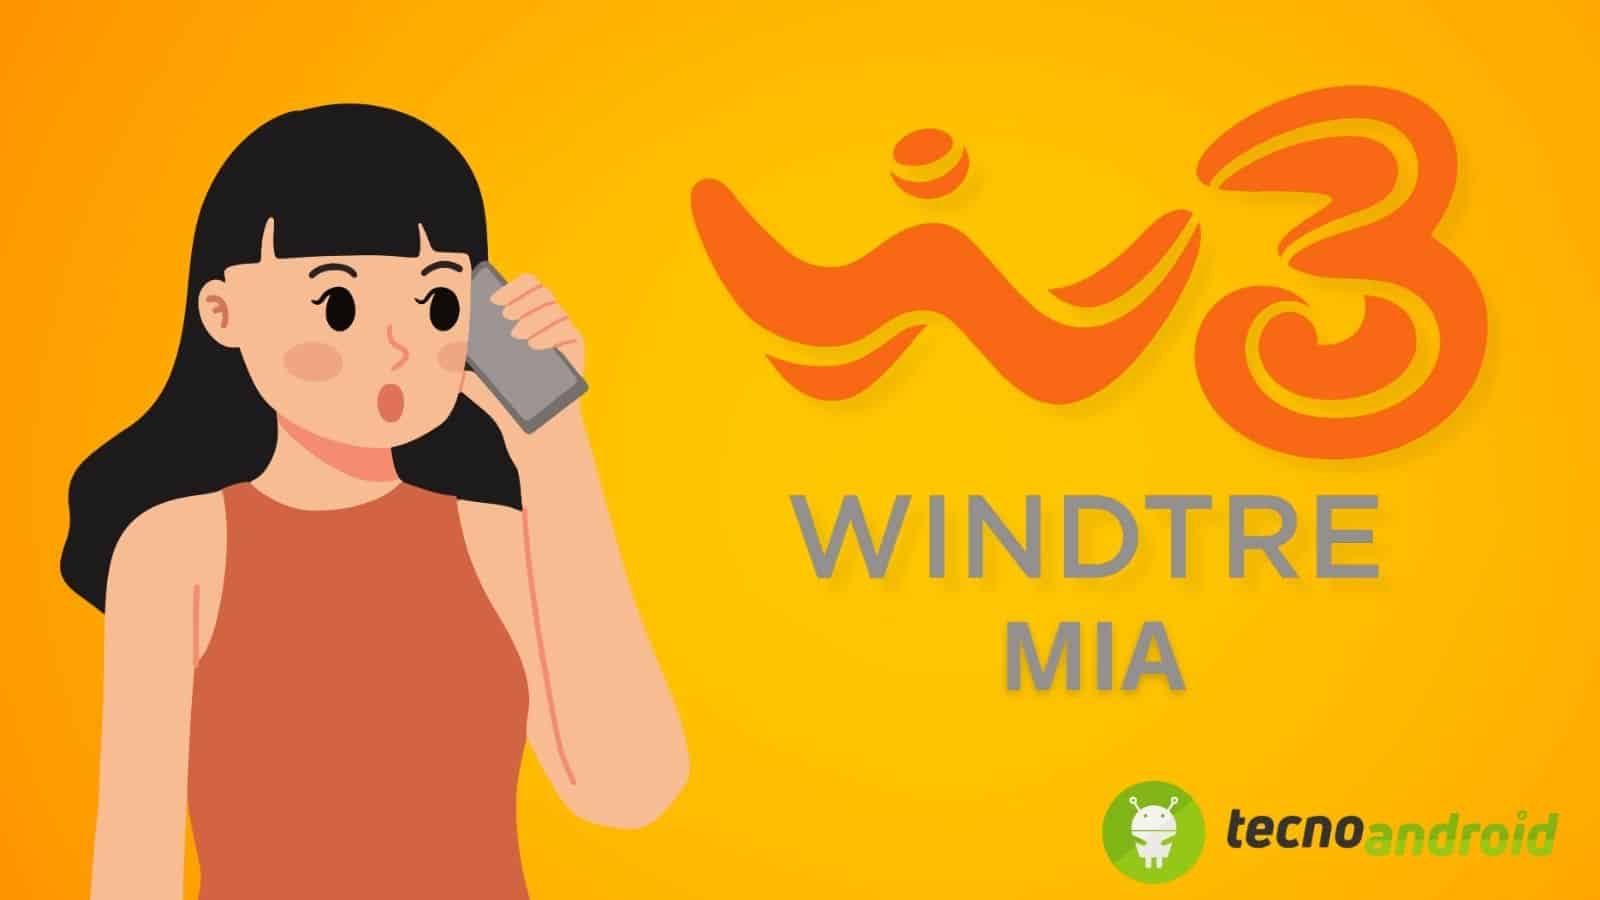 WindTre aggiorna le offerte MIA: cosa cambia per i clienti?